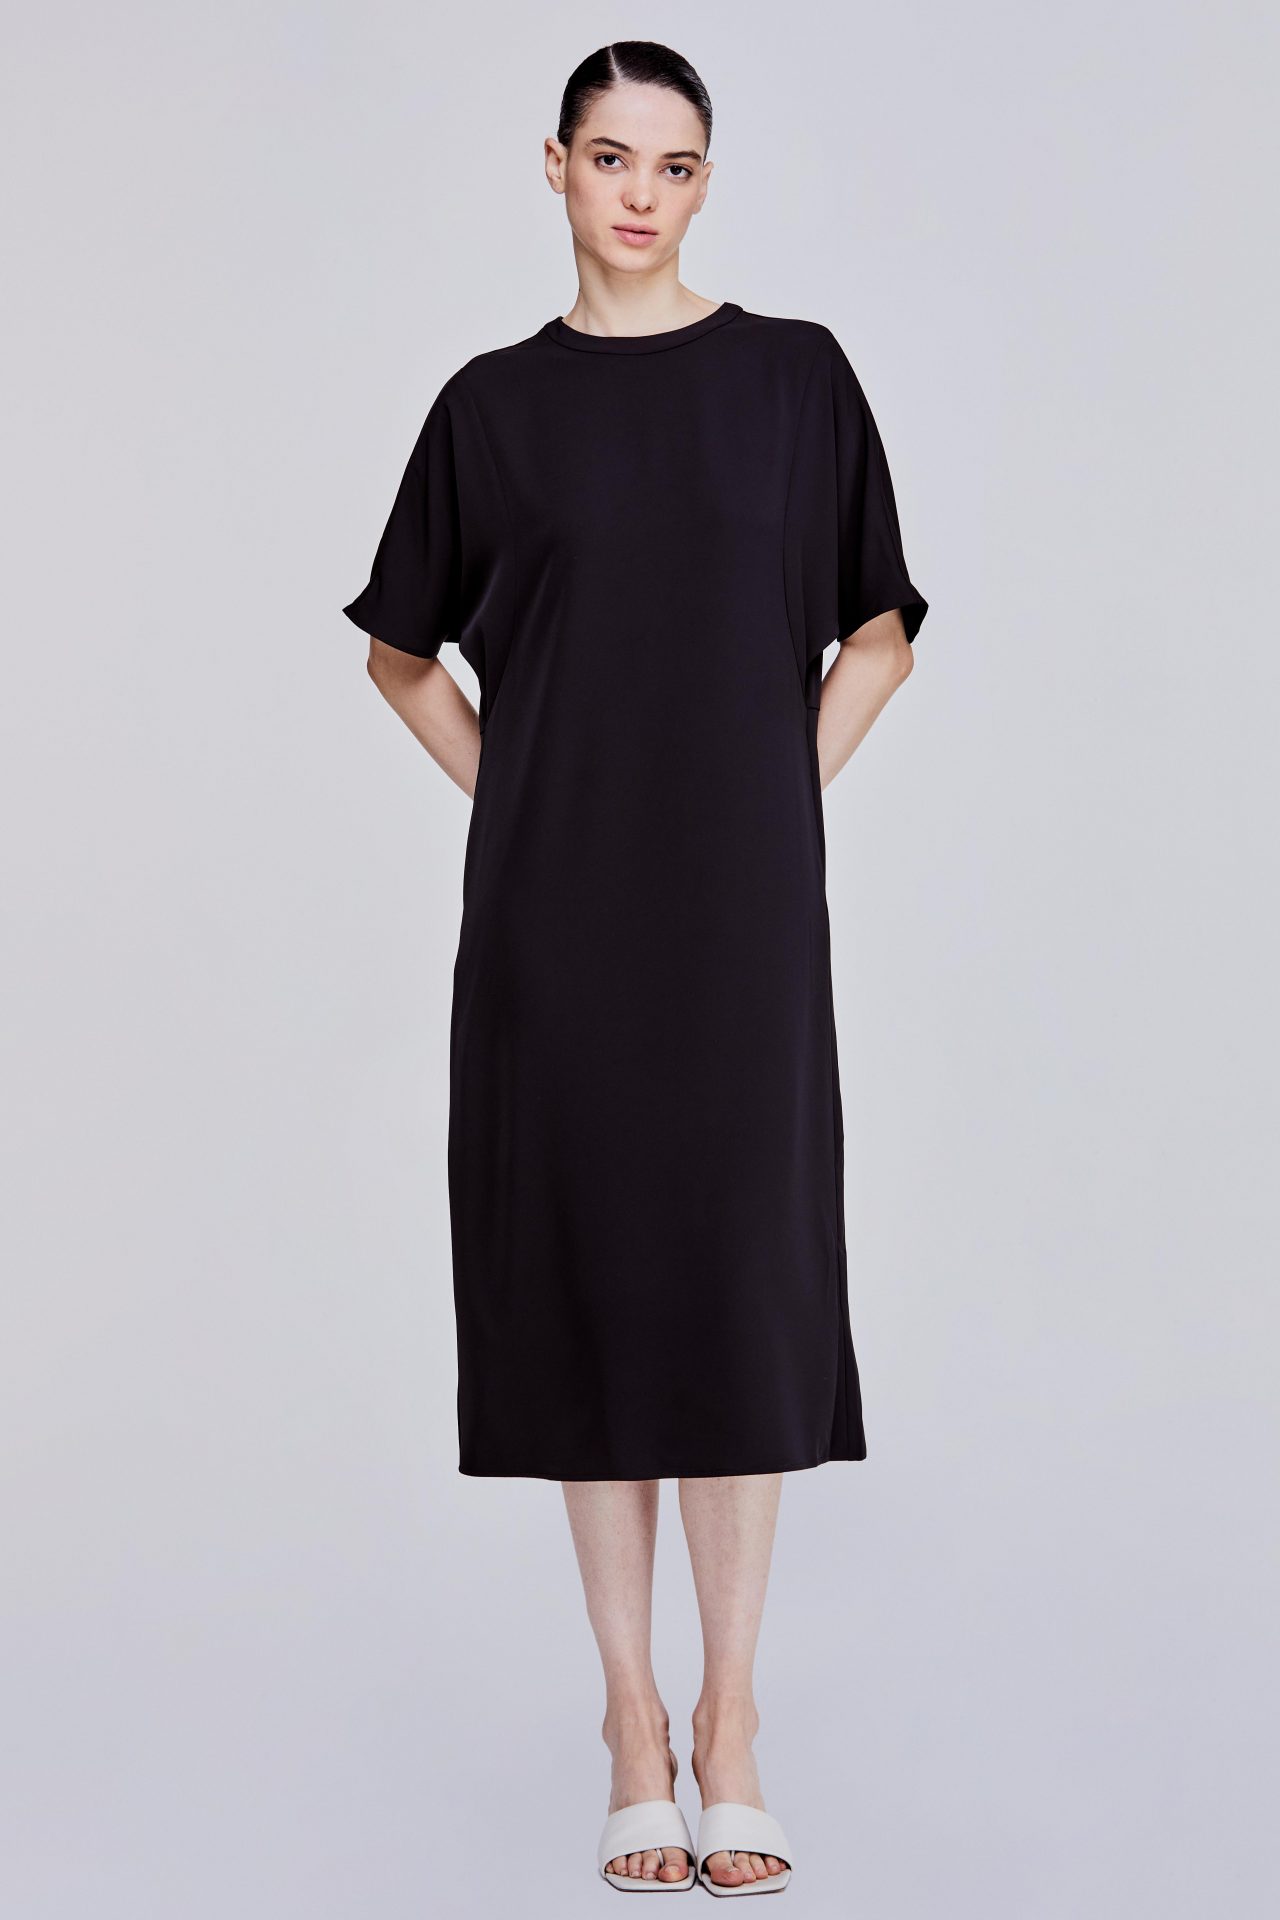 Dolman Sleeve-like Dress - SANS & SANS (MALAYSIA)